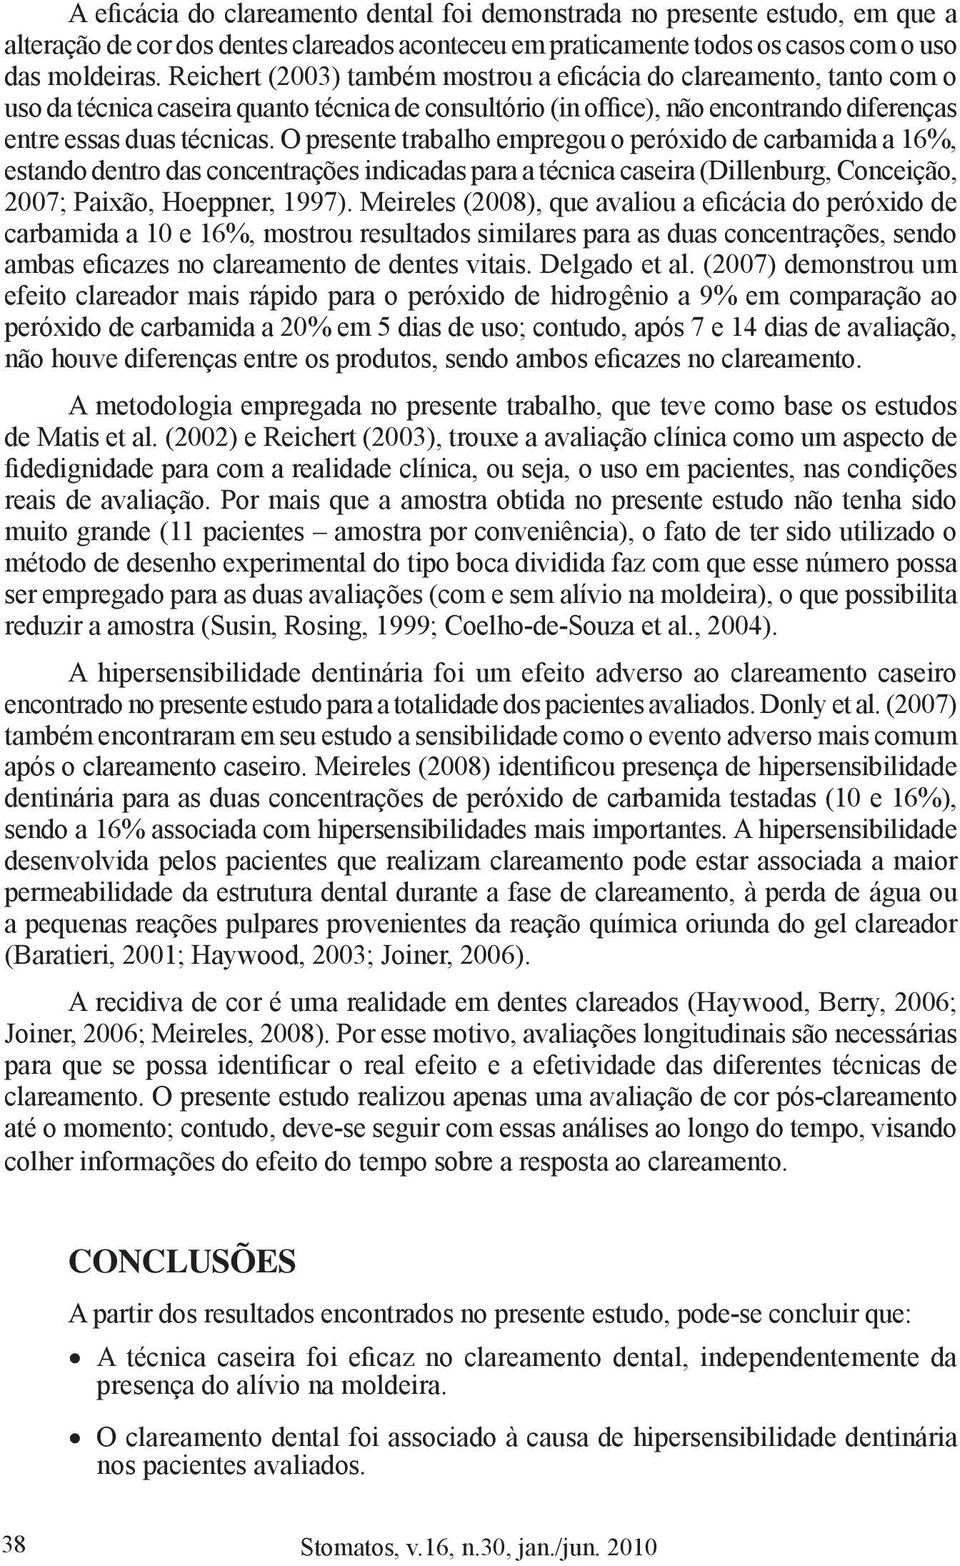 O presente trabalho empregou o peróxido de carbamida a 16%, estando dentro das concentrações indicadas para a técnica caseira (Dillenburg, Conceição, 2007; Paixão, Hoeppner, 1997).